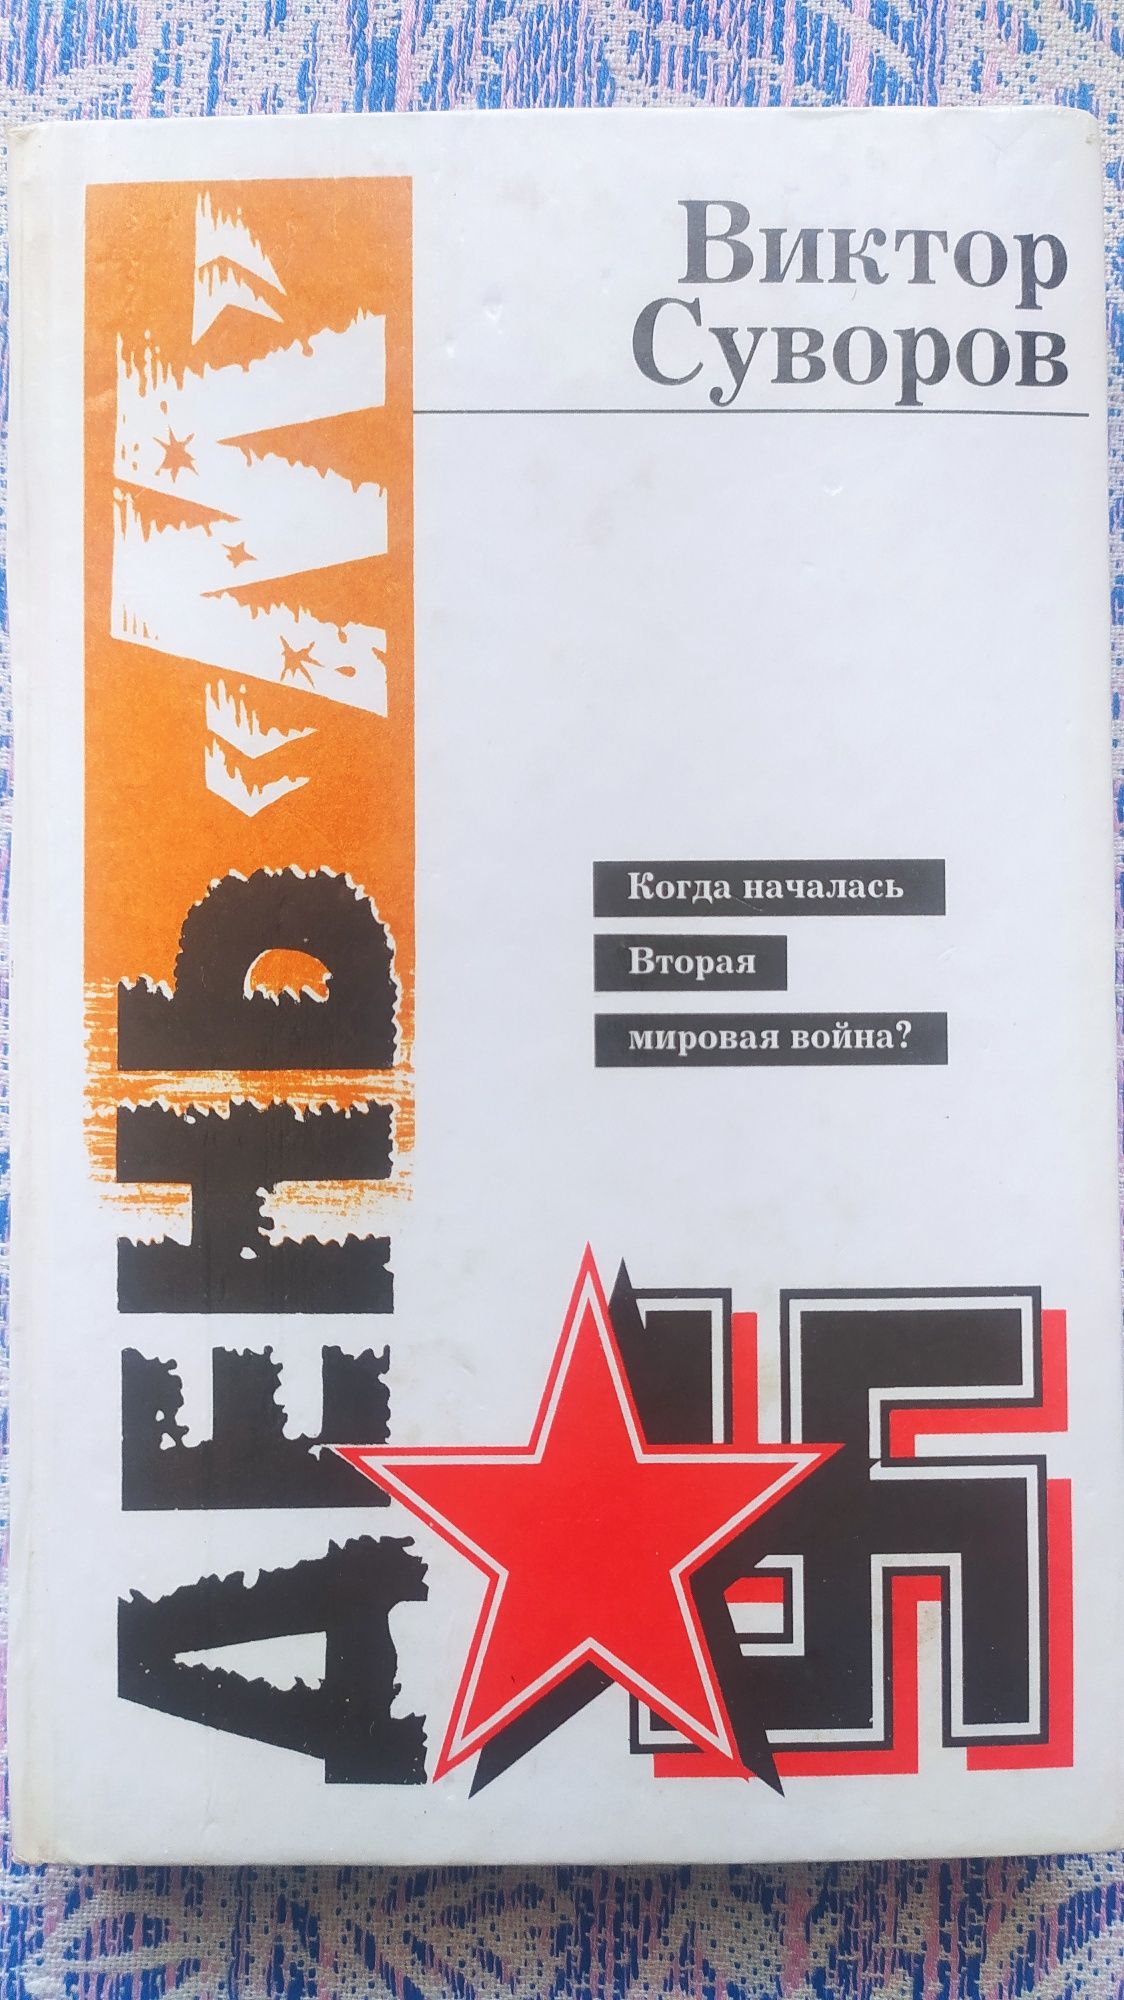 Книги о Второй мировой войне (Сталин, Гитлер,Жуков и др)